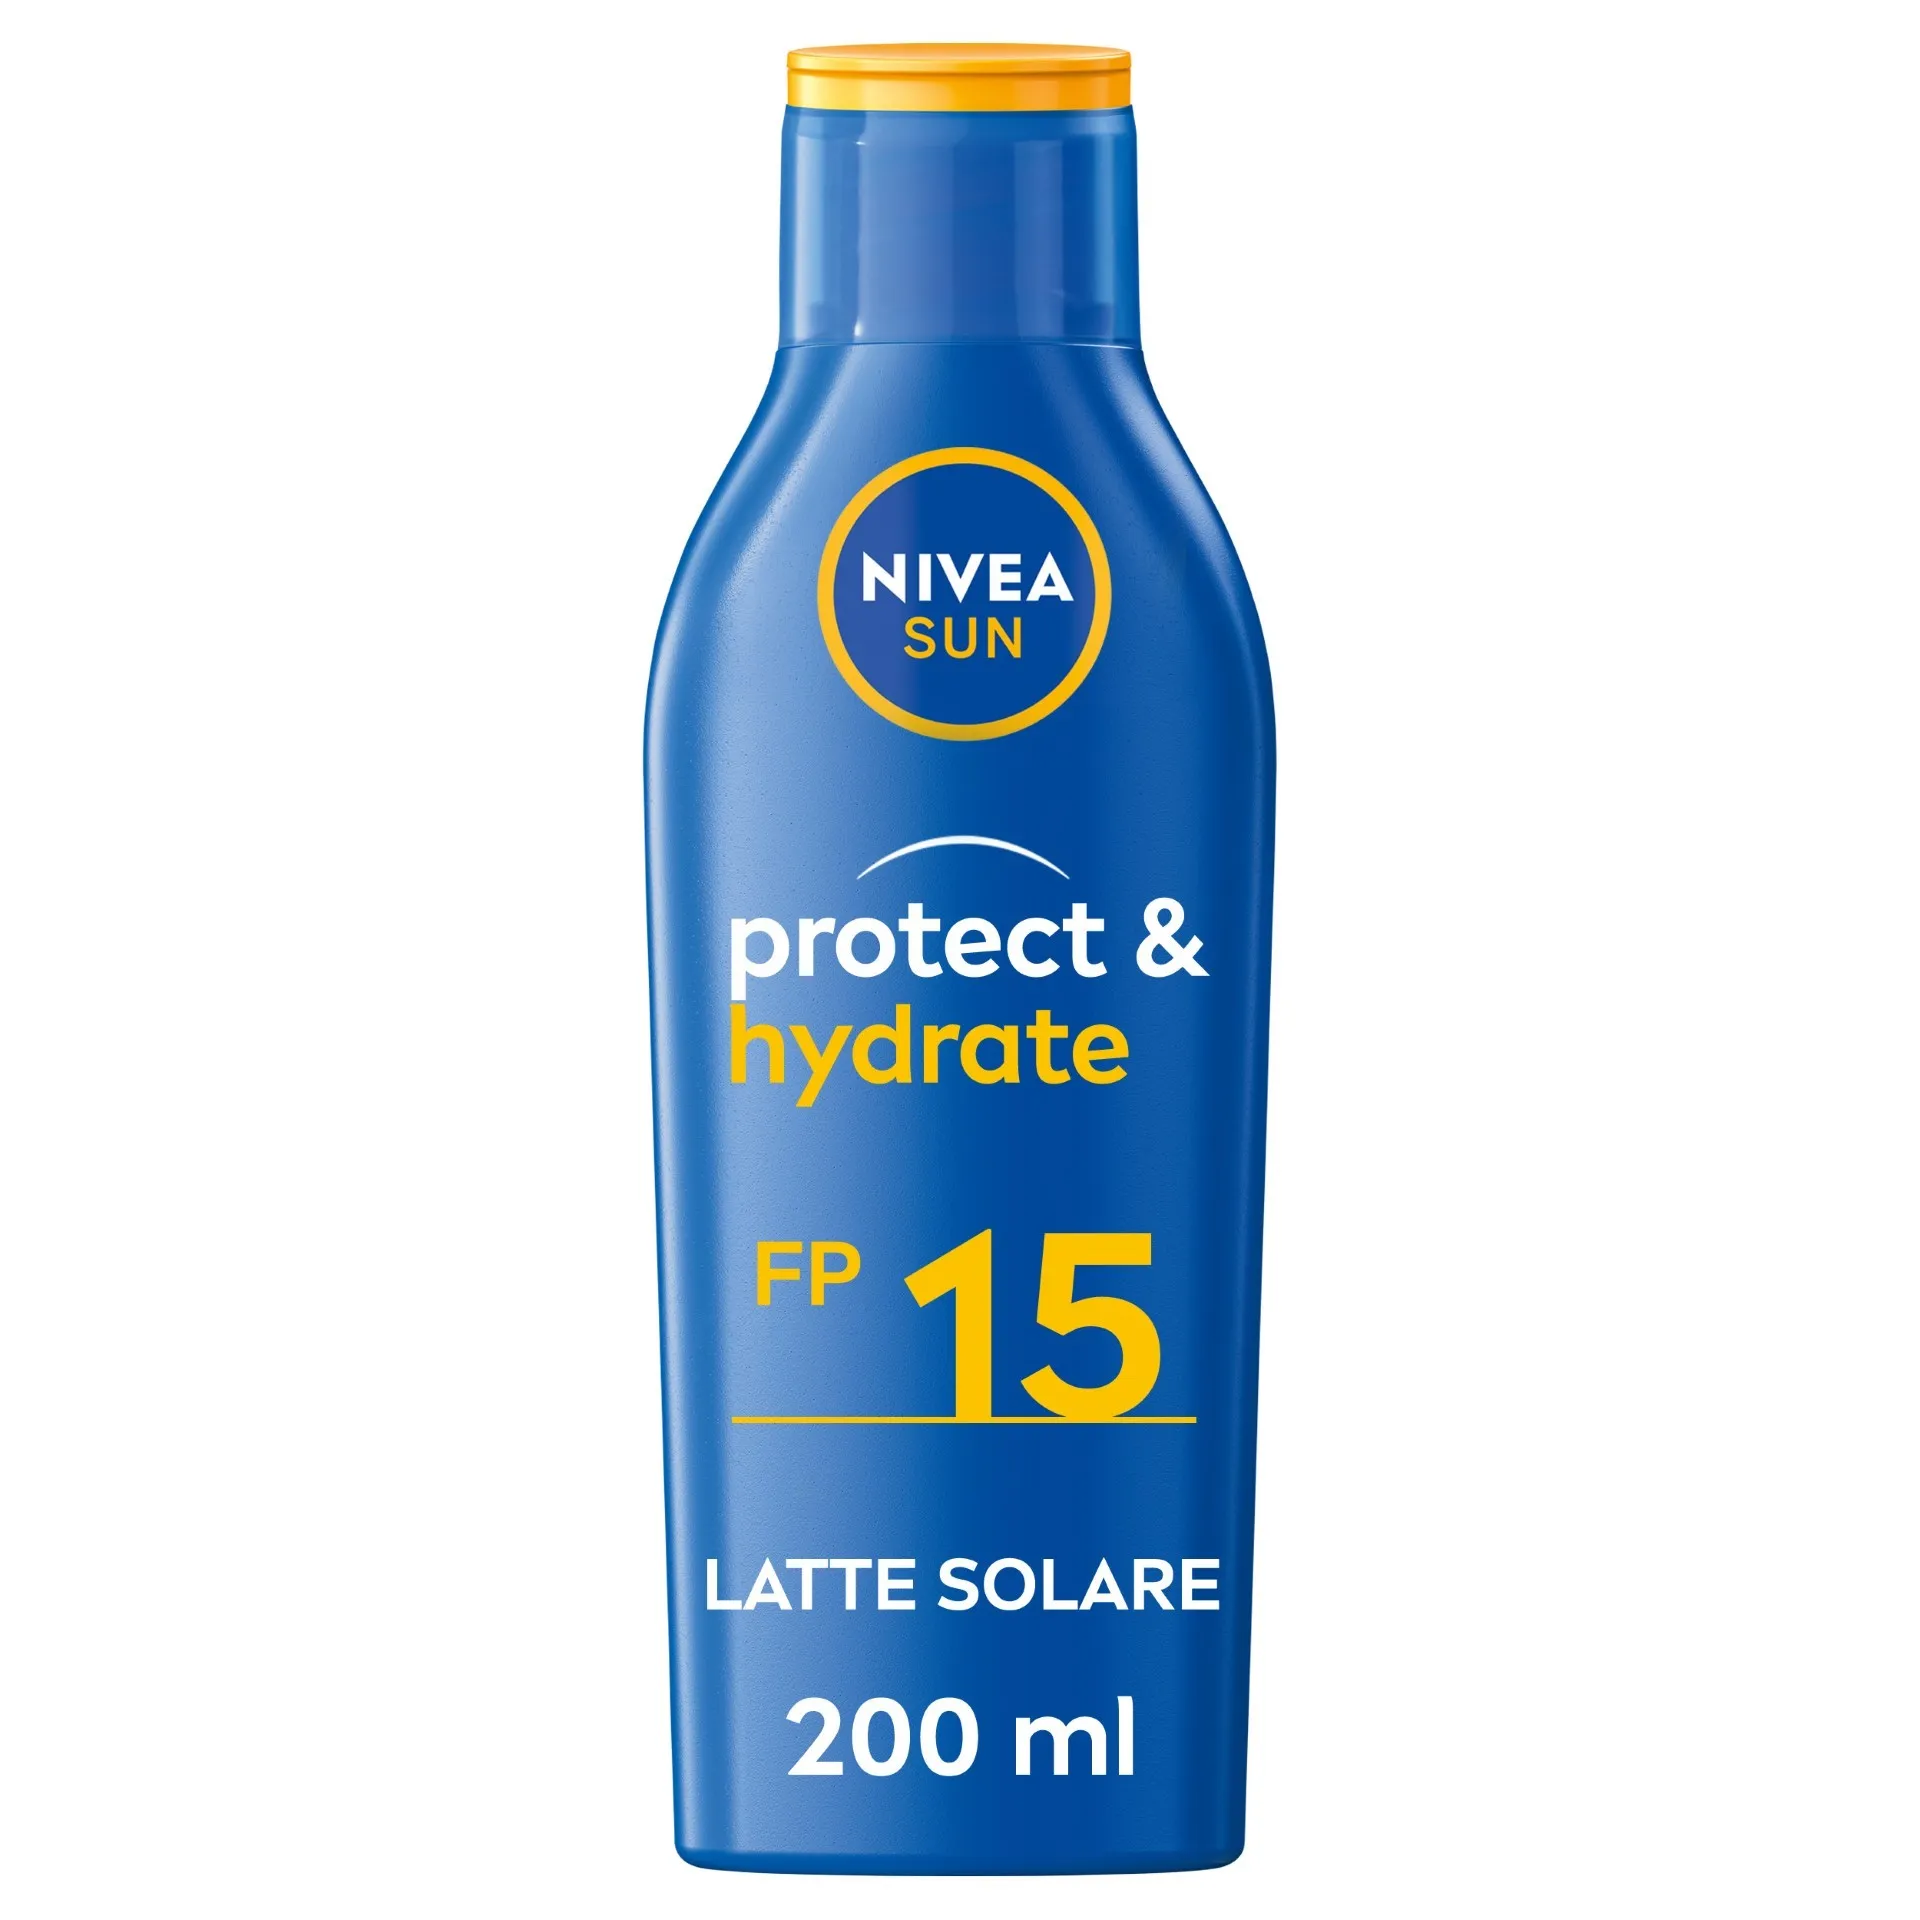  Sun Protect E Hydrate Latte Solare Fp15 200ml